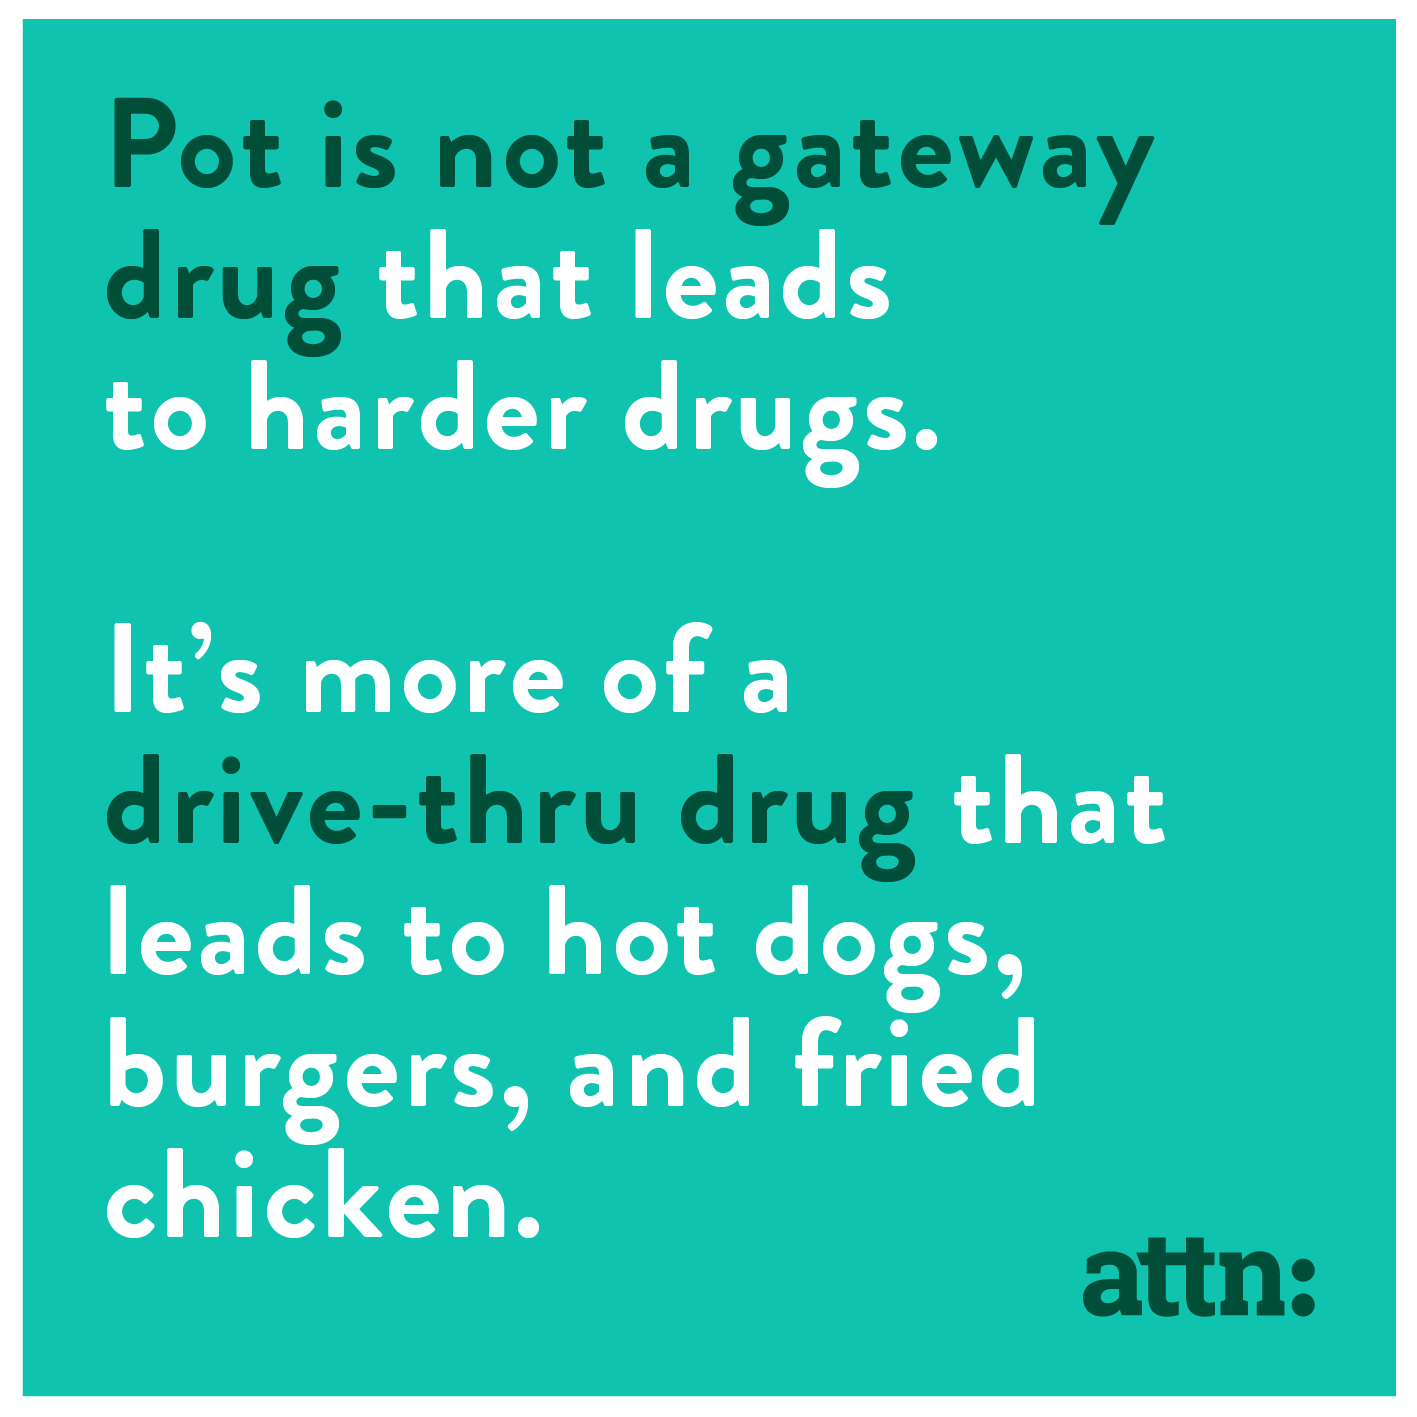 Pot as a gateway drug